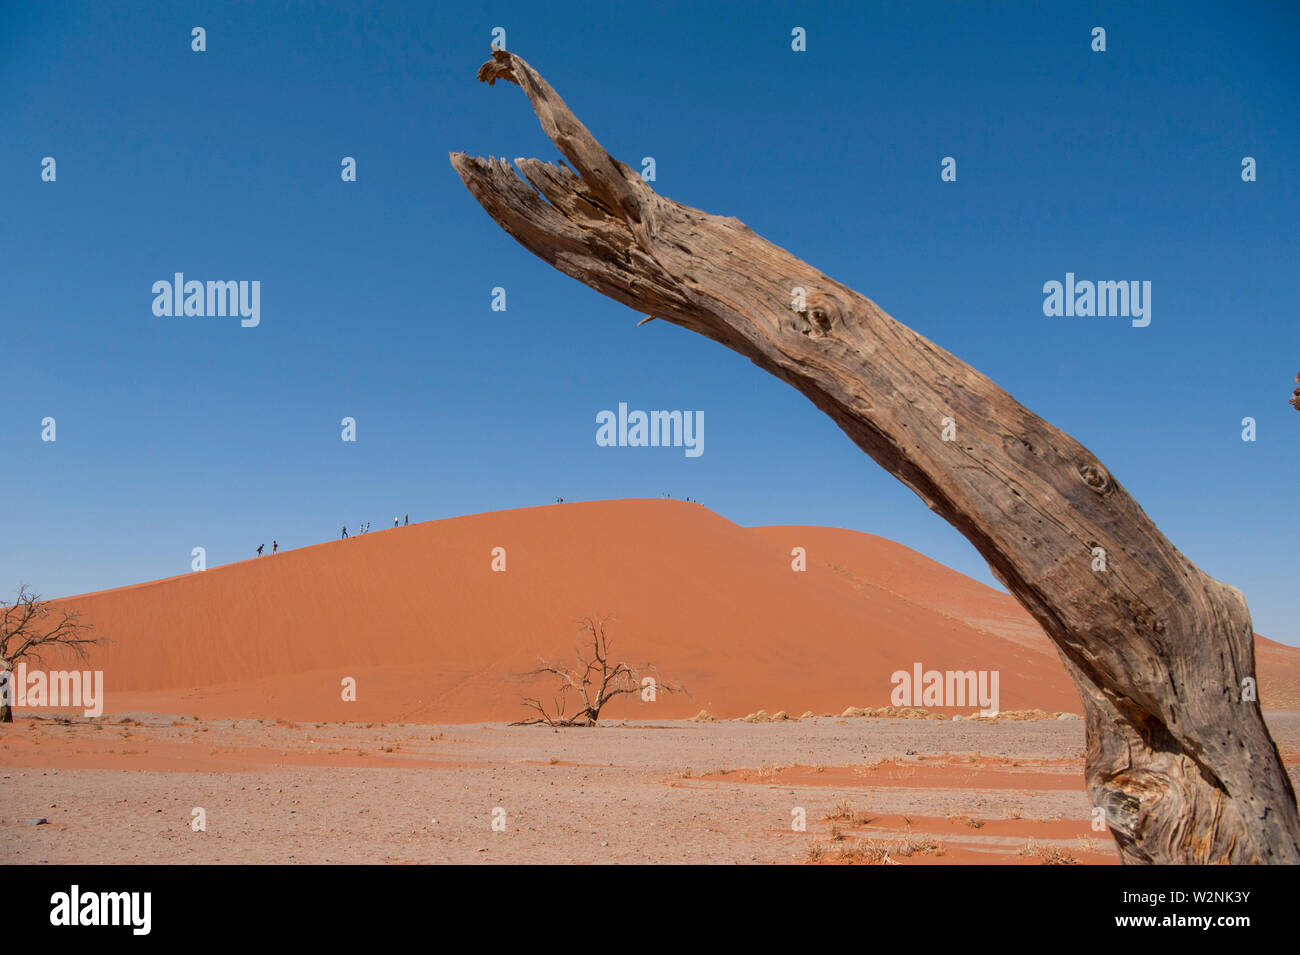 Dead Vlei, mit trockenen 900 Jahre alte Bäume stehen in der salzpfanne umgeben von aufragenden roten Sanddünen. Namib-Naukluft-Nationalpark, Namibia. Stockfoto